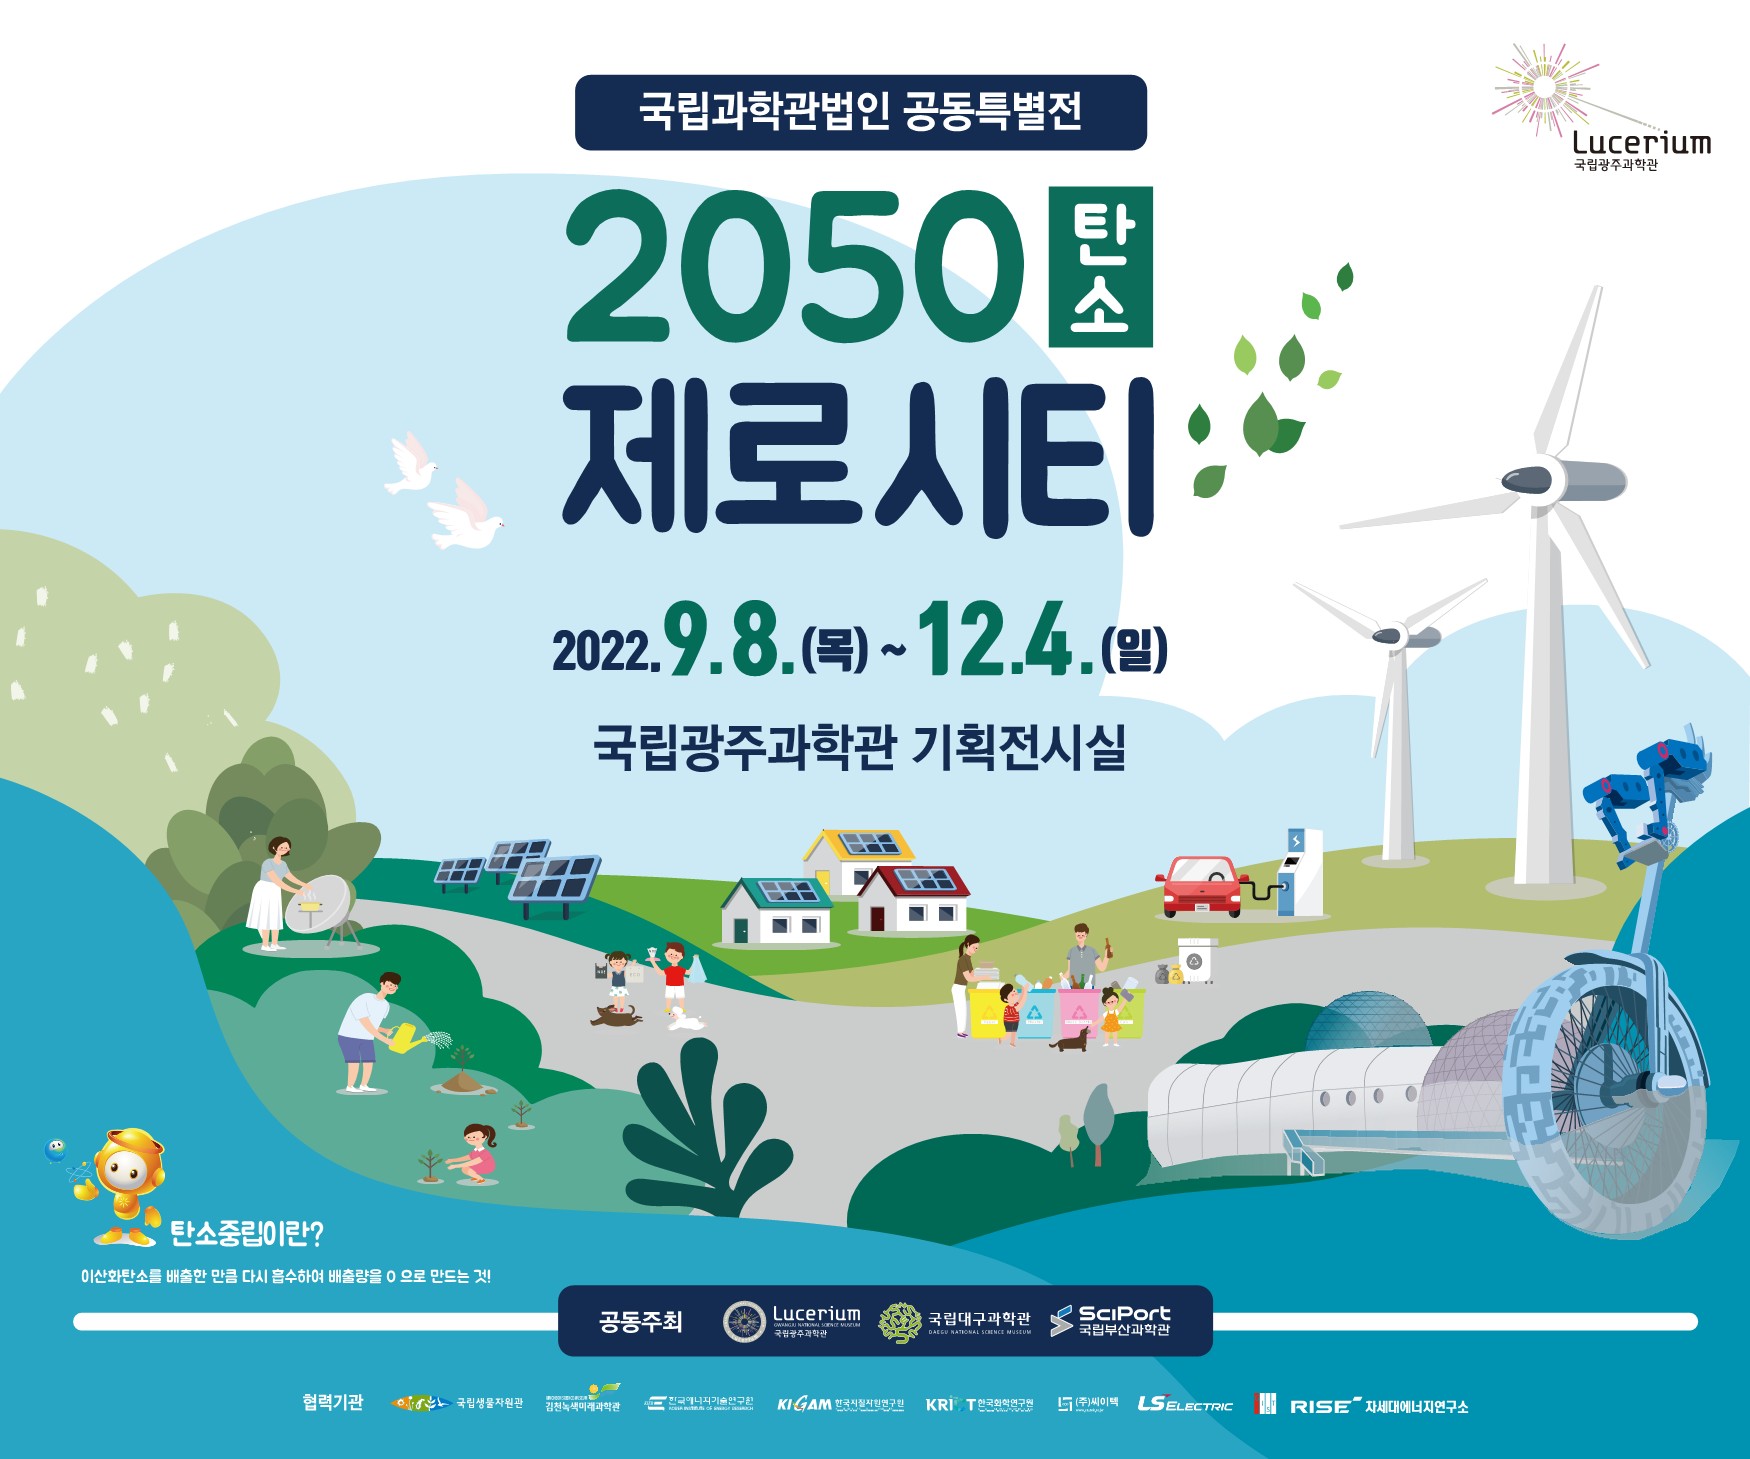 국립광주과학관 대외협력홍보실_2050 탄소 제로시티 특별전 포스터